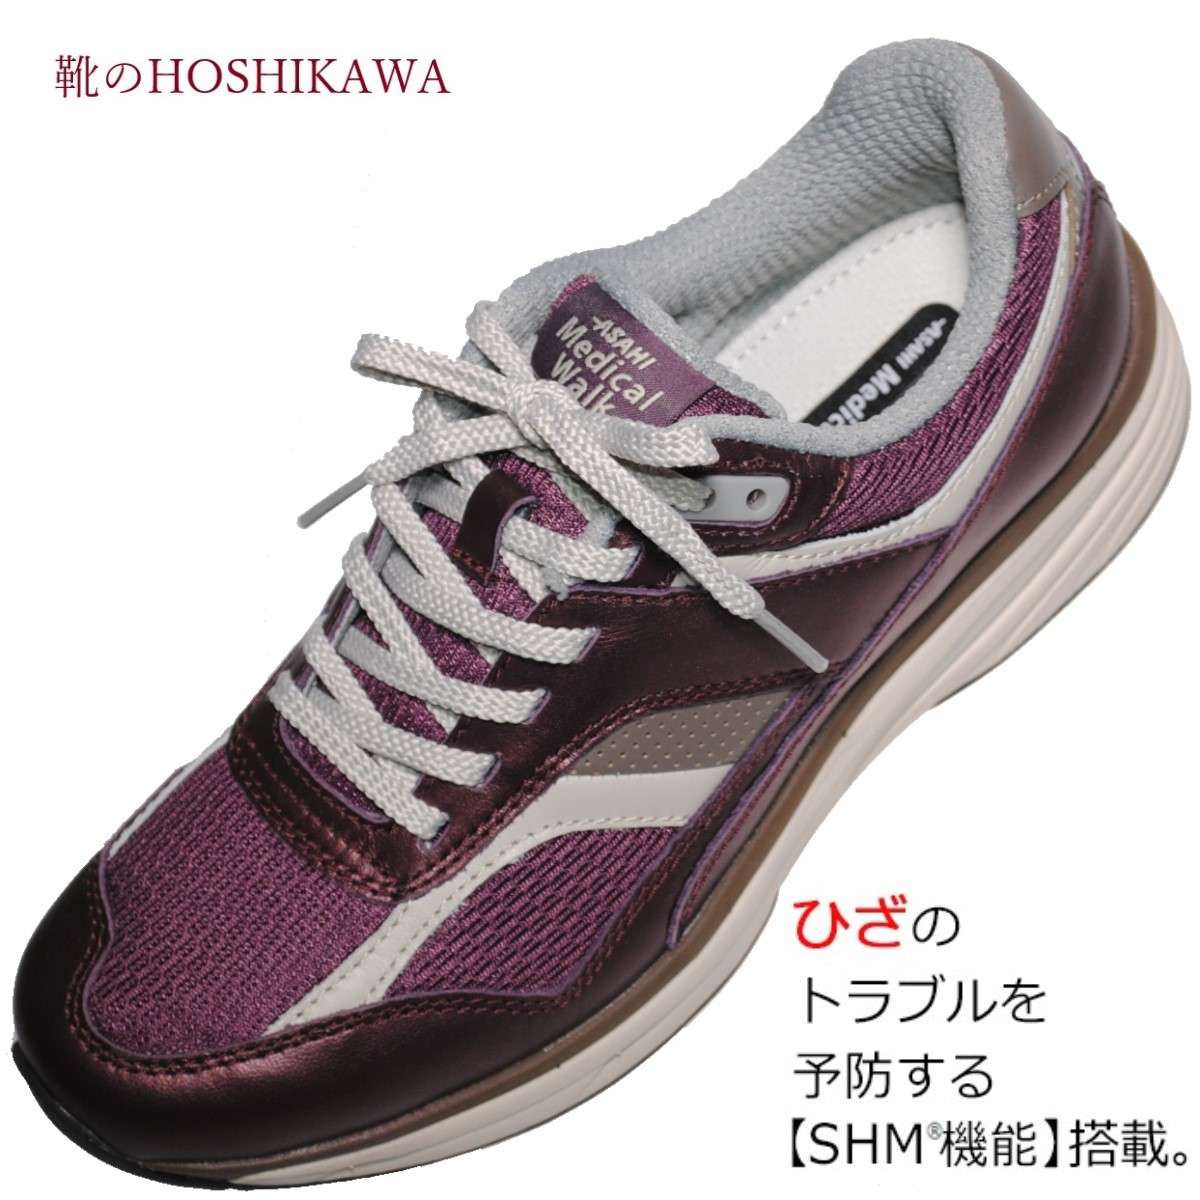 【靴のHOSHIKAWA】 『Medical Walk TR L019』アサヒ メディカルウォーク22cm〜25cm EEEレディース ワインカジュアルシューズ レースアップ天然皮革 SHM